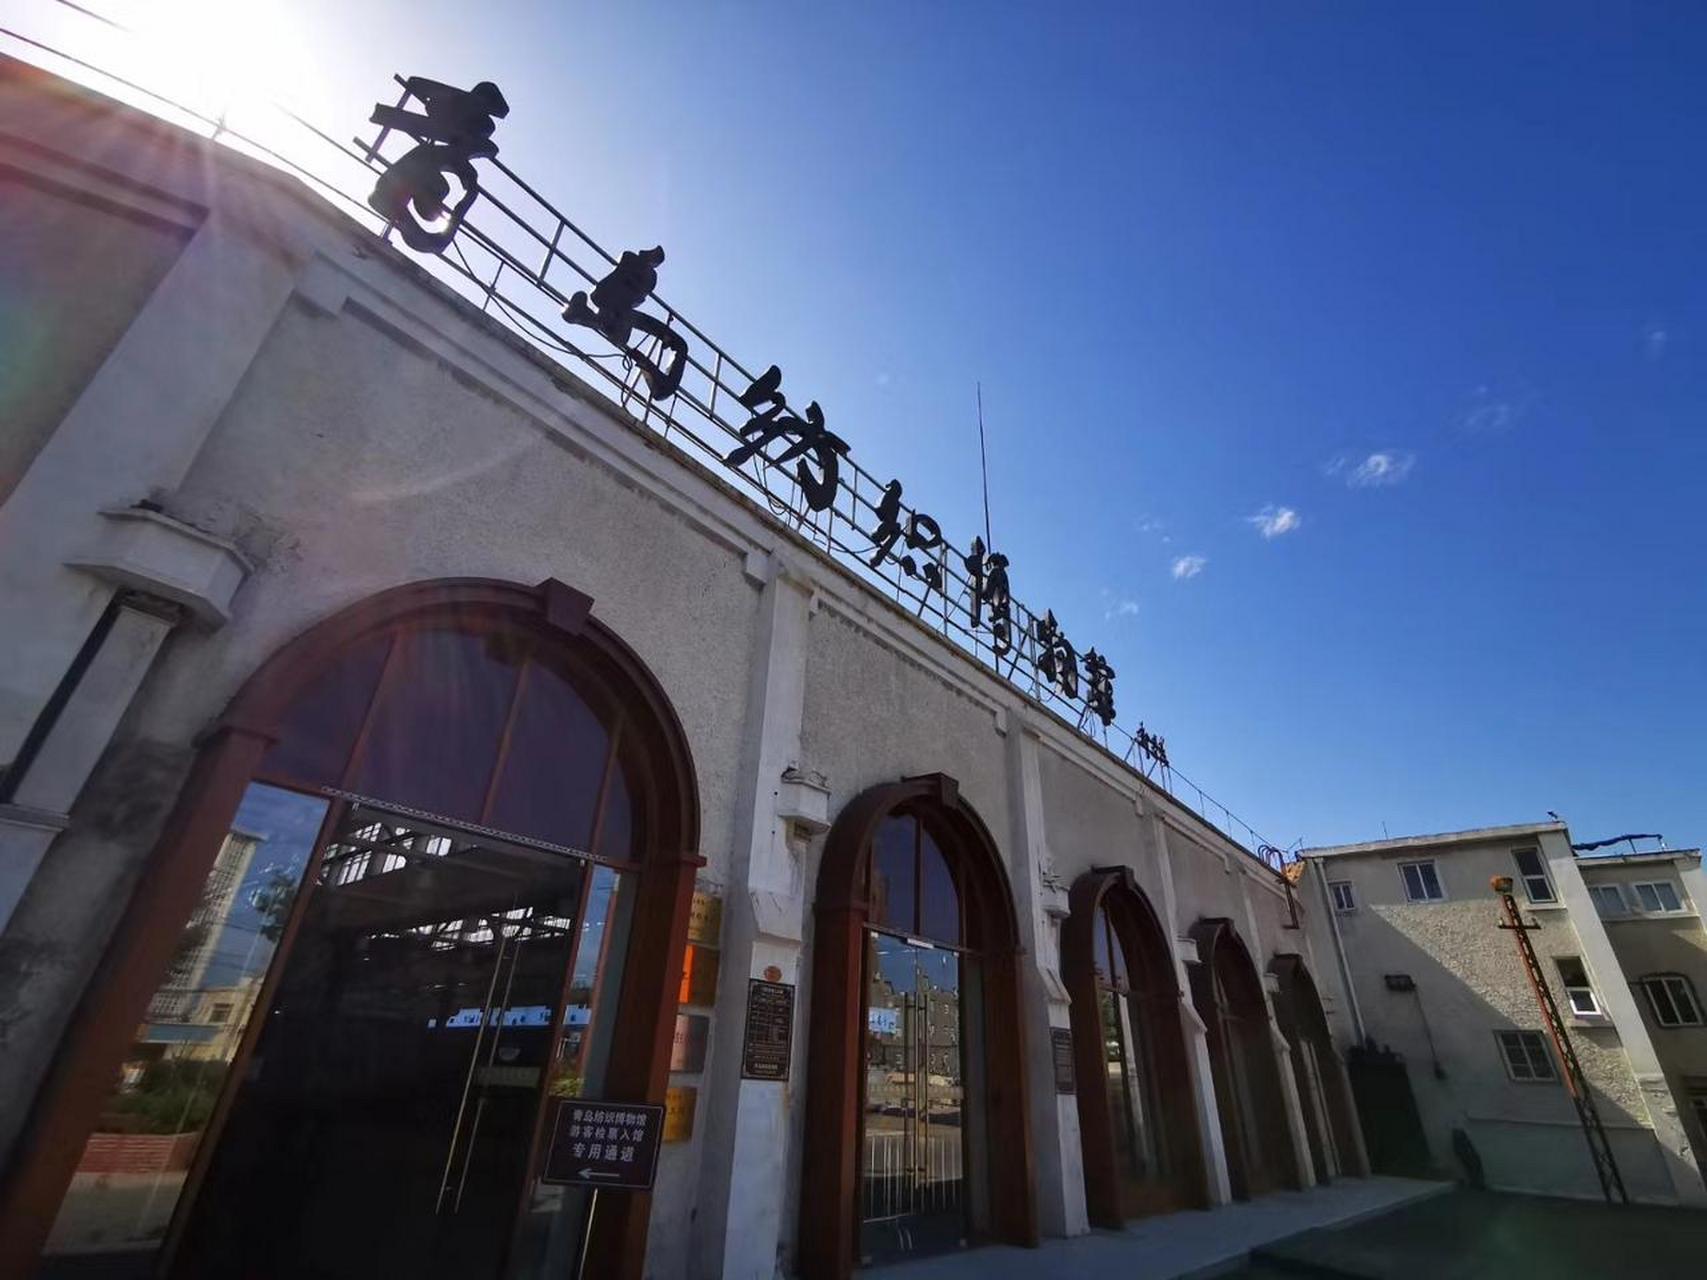 青岛纺织博物馆位于青岛市市北区四流南路80号,该地前身为始建于1934